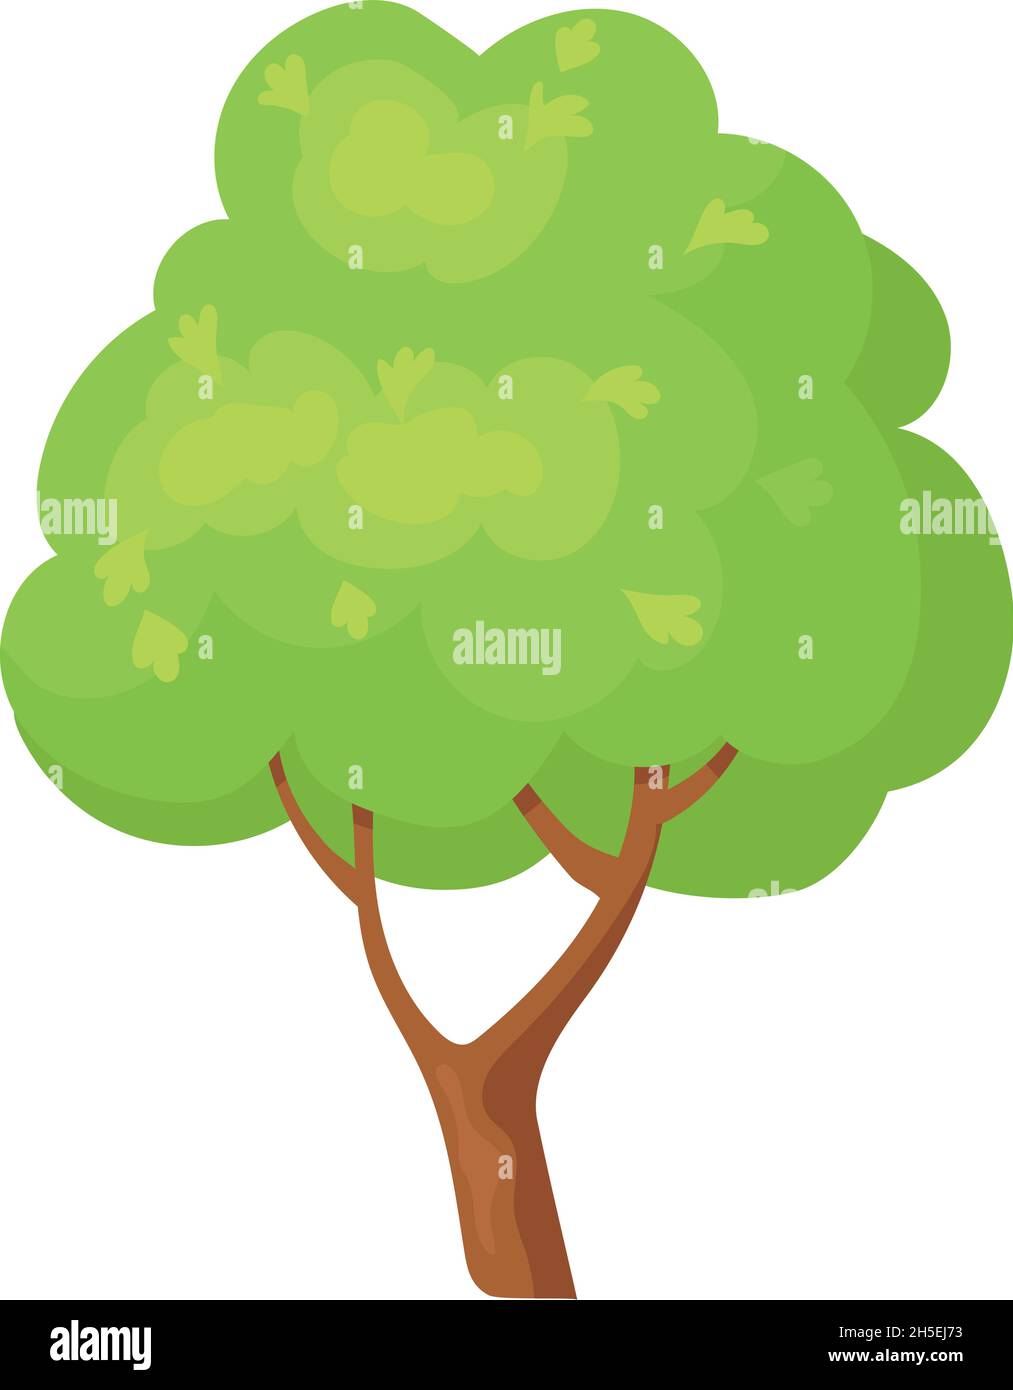 Arborescence ramifiée.Végétation mignonne pour la terre boisée, dessin animé vectoriel isolé sur fond blanc Illustration de Vecteur